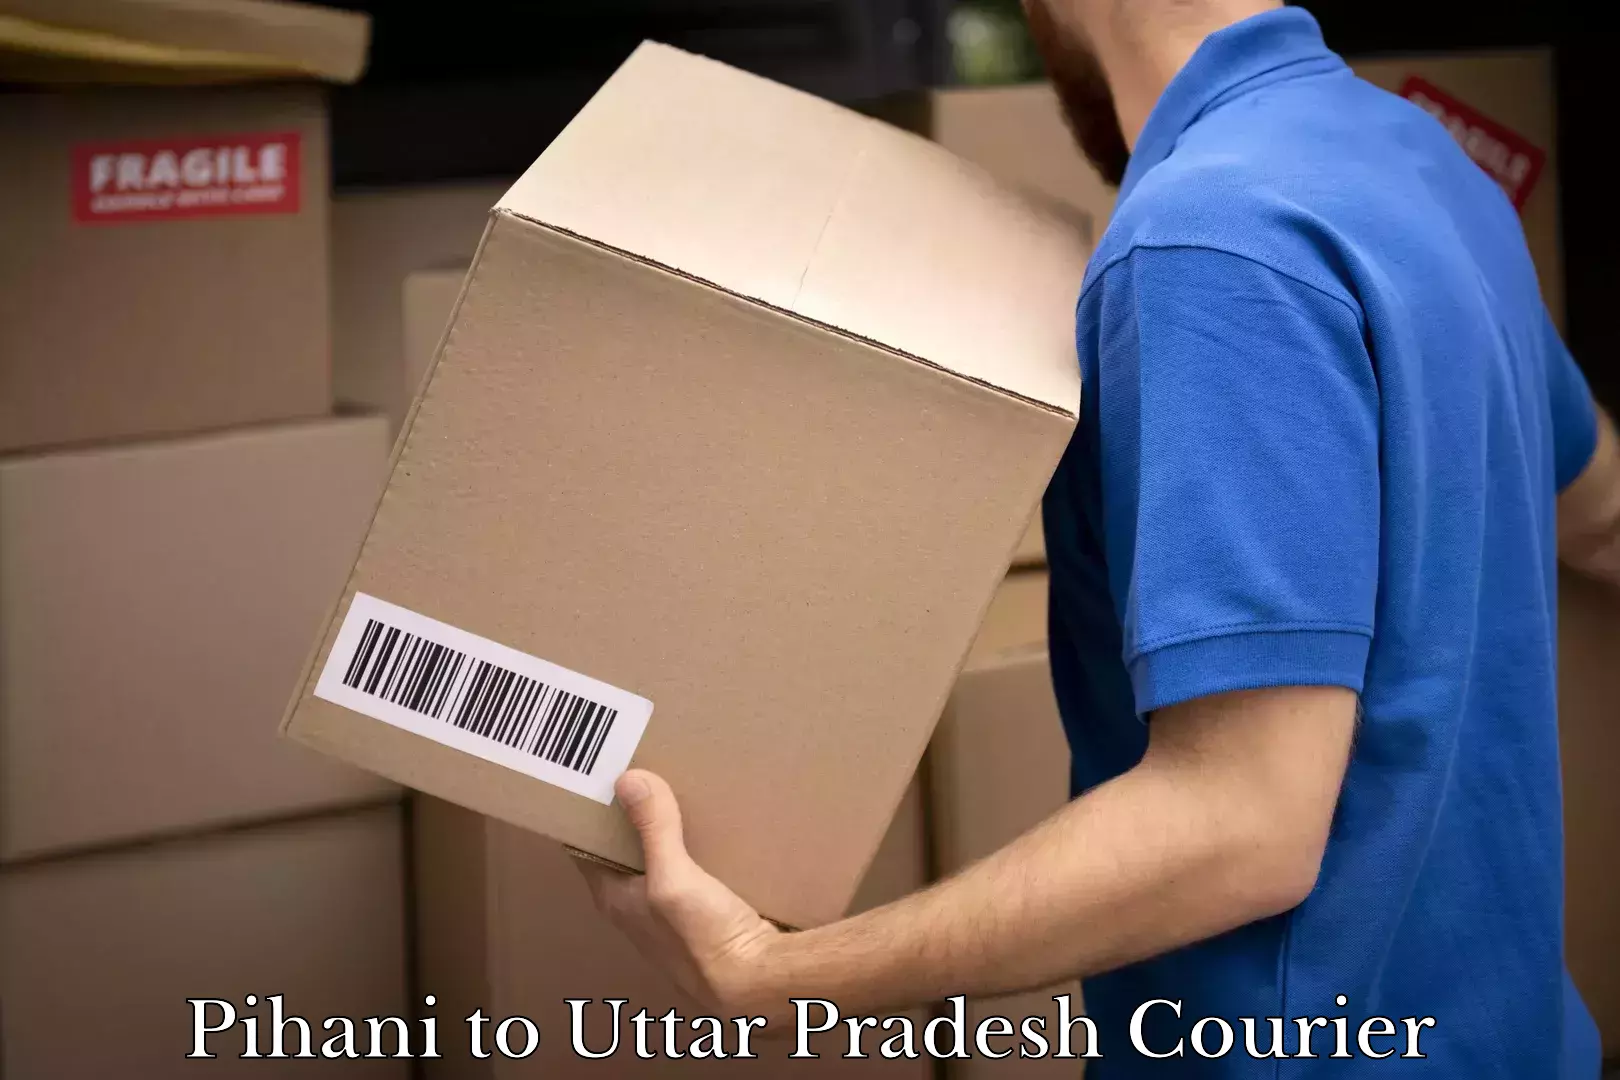 Ocean freight courier Pihani to Uttar Pradesh